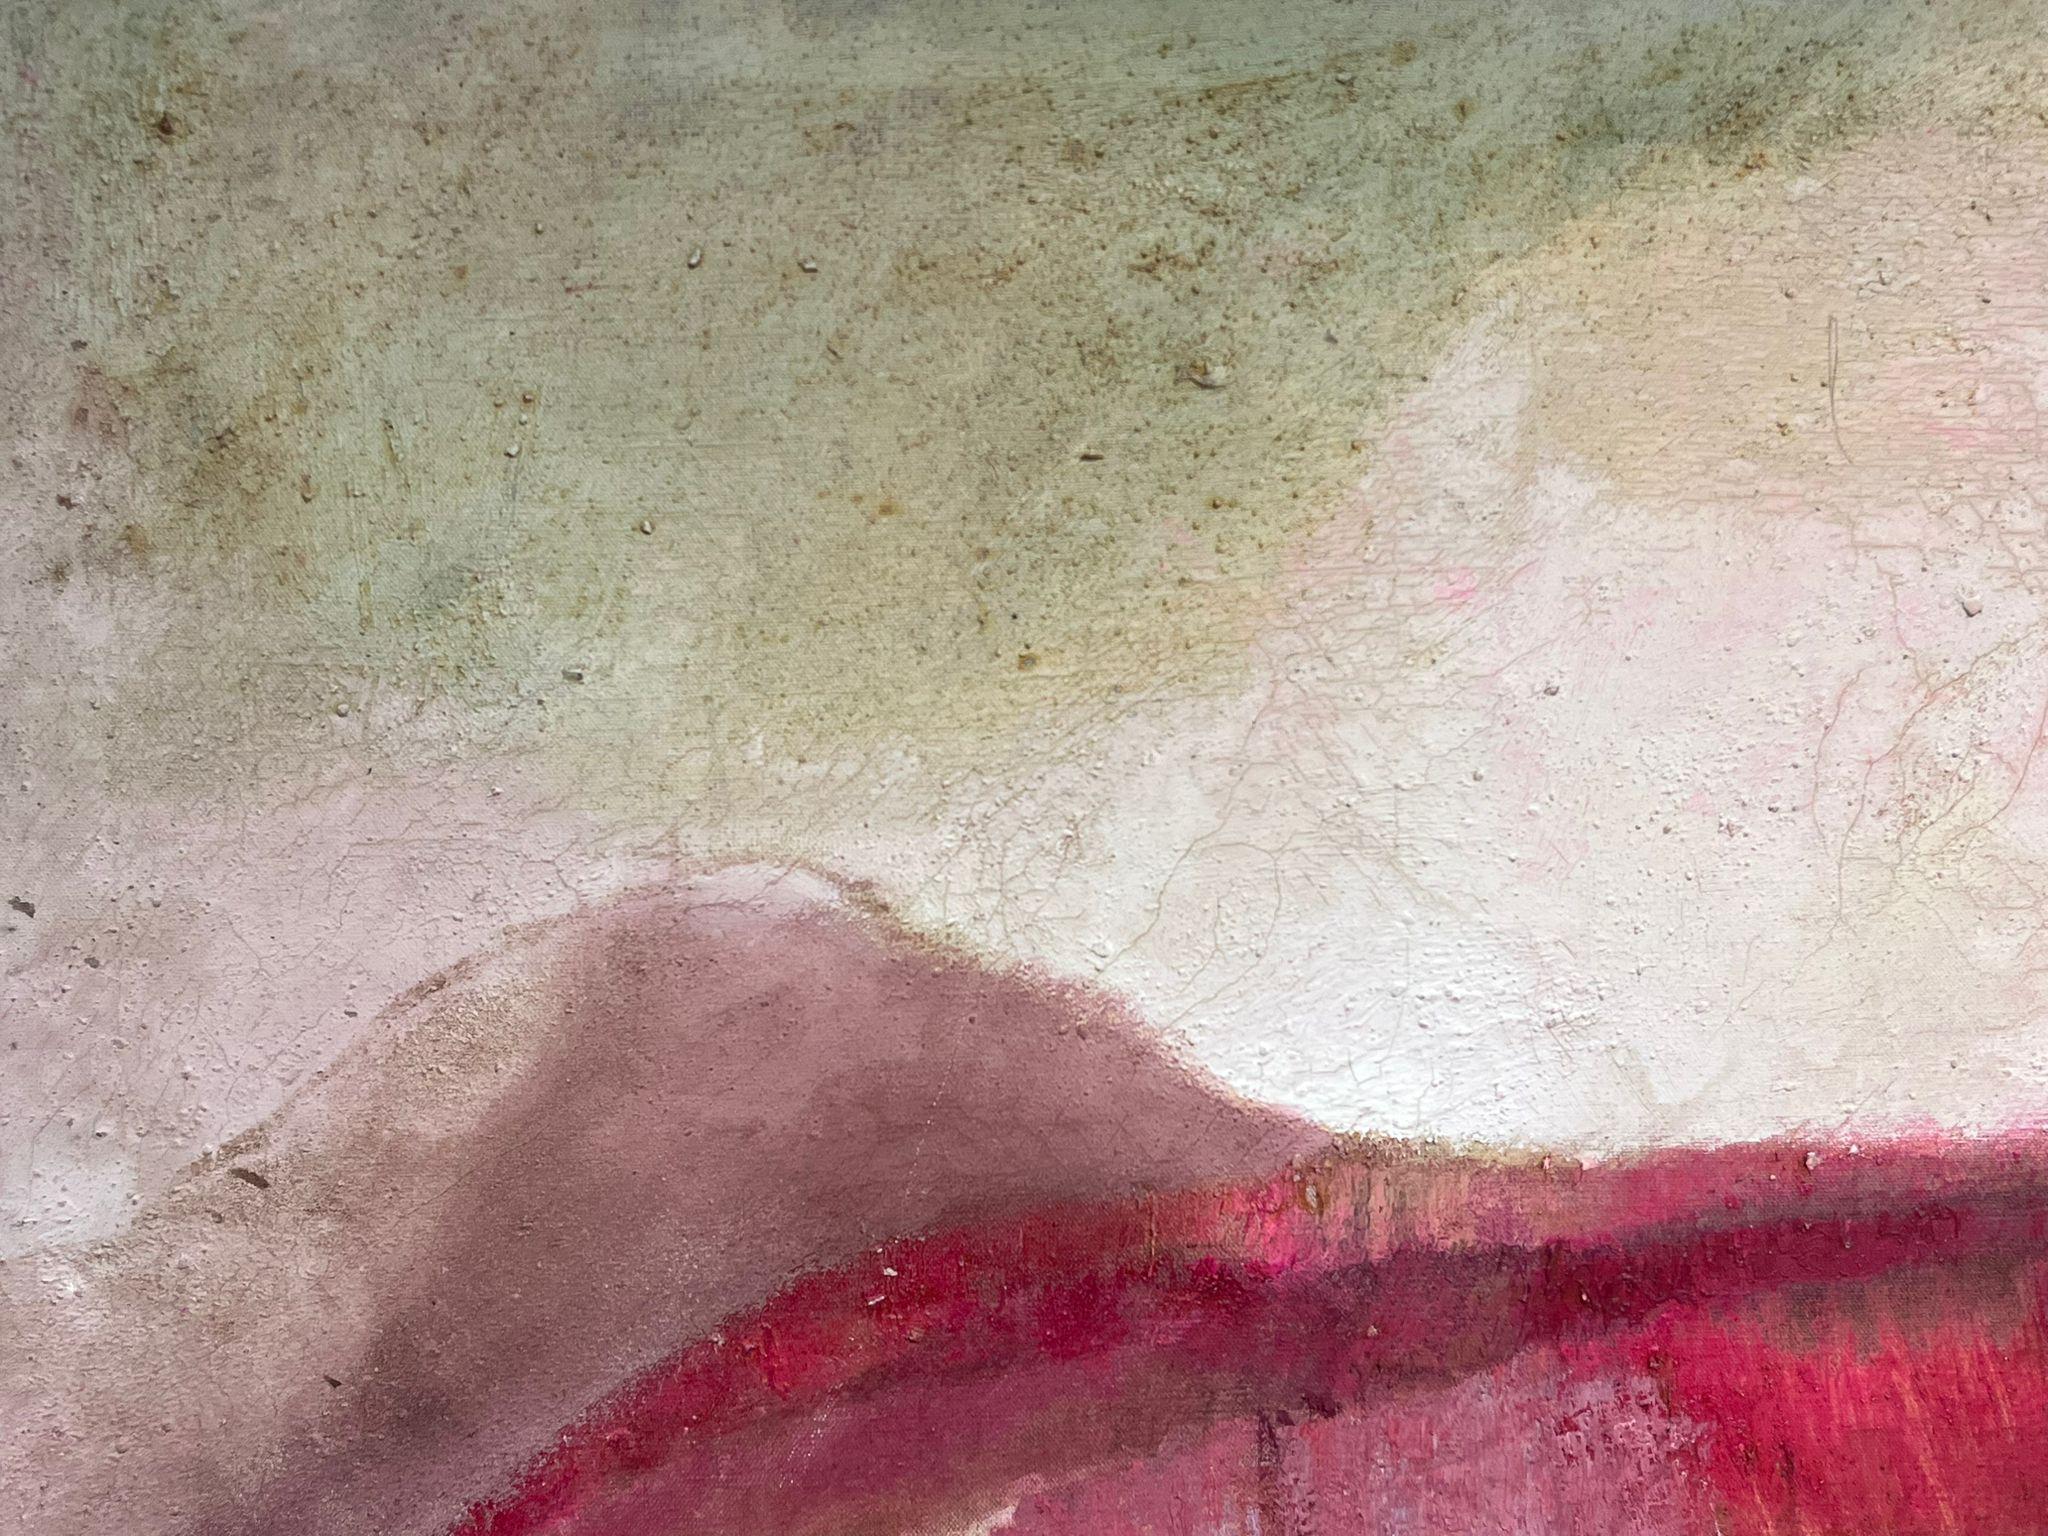 Französischer Expressionist ca. 1970er Jahre
Signiert und datiert
Öl auf Leinwand
Leinwand: 25,5 x 32 Zoll
Provenienz: Privatsammlung, Frankreich
Zustand: sehr guter und gesunder Zustand, altersbedingte Risse und Flecken im Lack